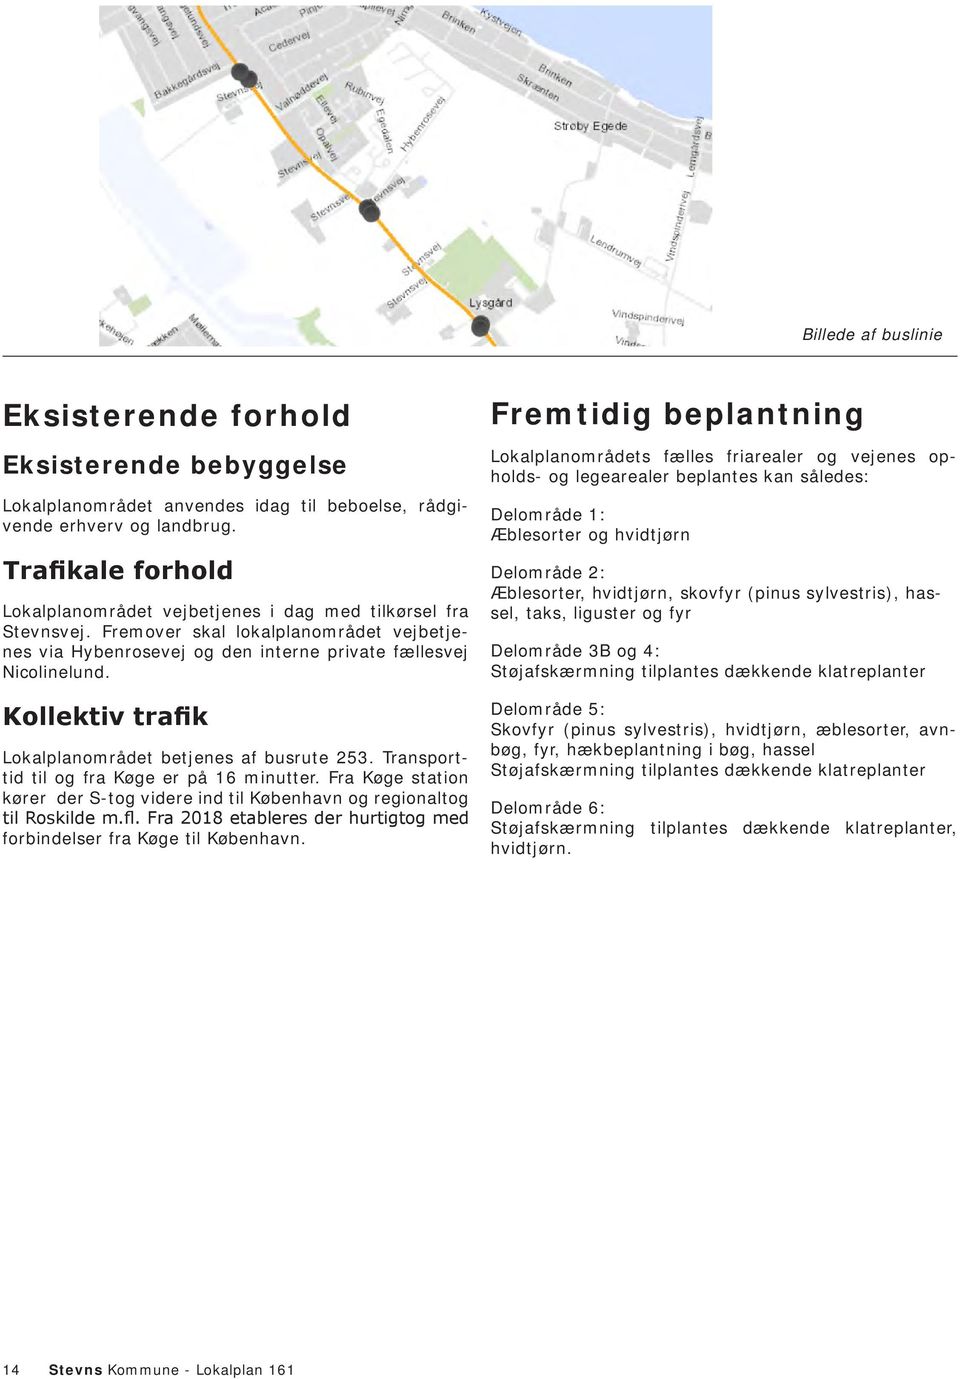 Kollektiv trafik Lokalplanområdet betjenes af busrute 253. Transporttid til og fra Køge er på 16 minutter. Fra Køge station kører der S-tog videre ind til København og regionaltog til Roskilde m.fl.